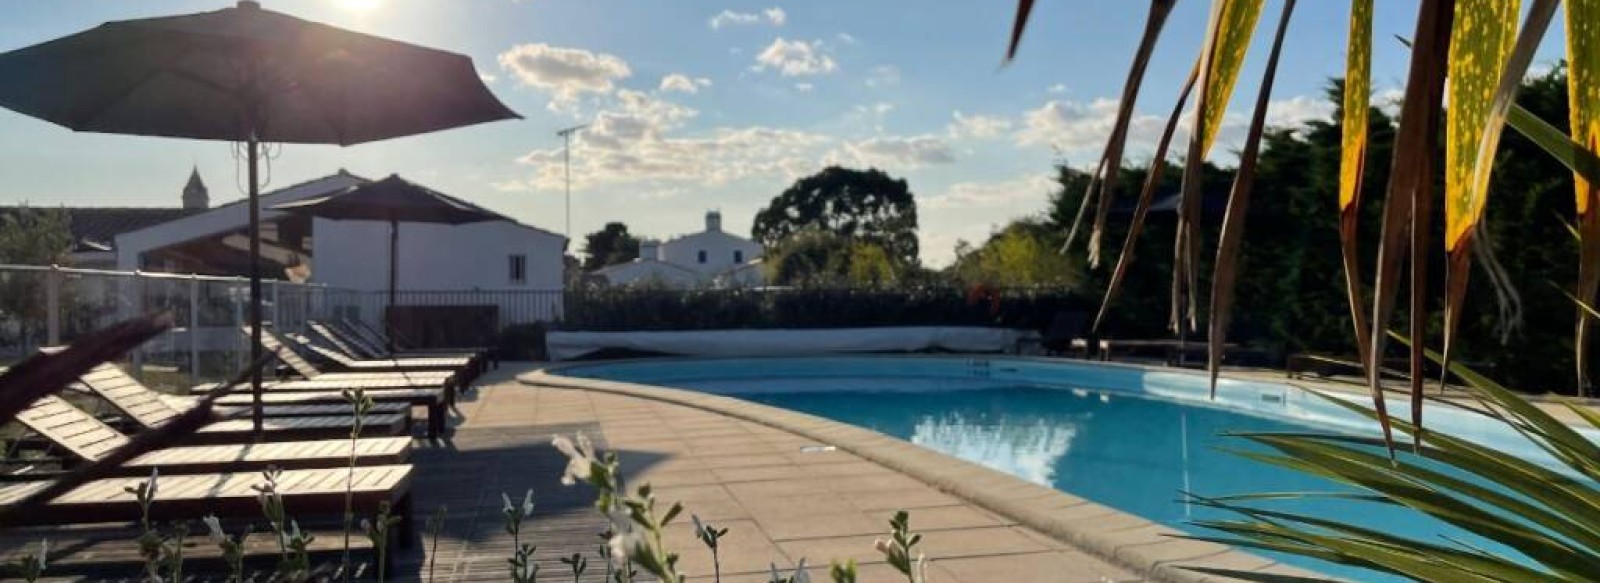 Maison de vacances accessible PMR dans residence avec piscine a Noirmoutier en l'ile